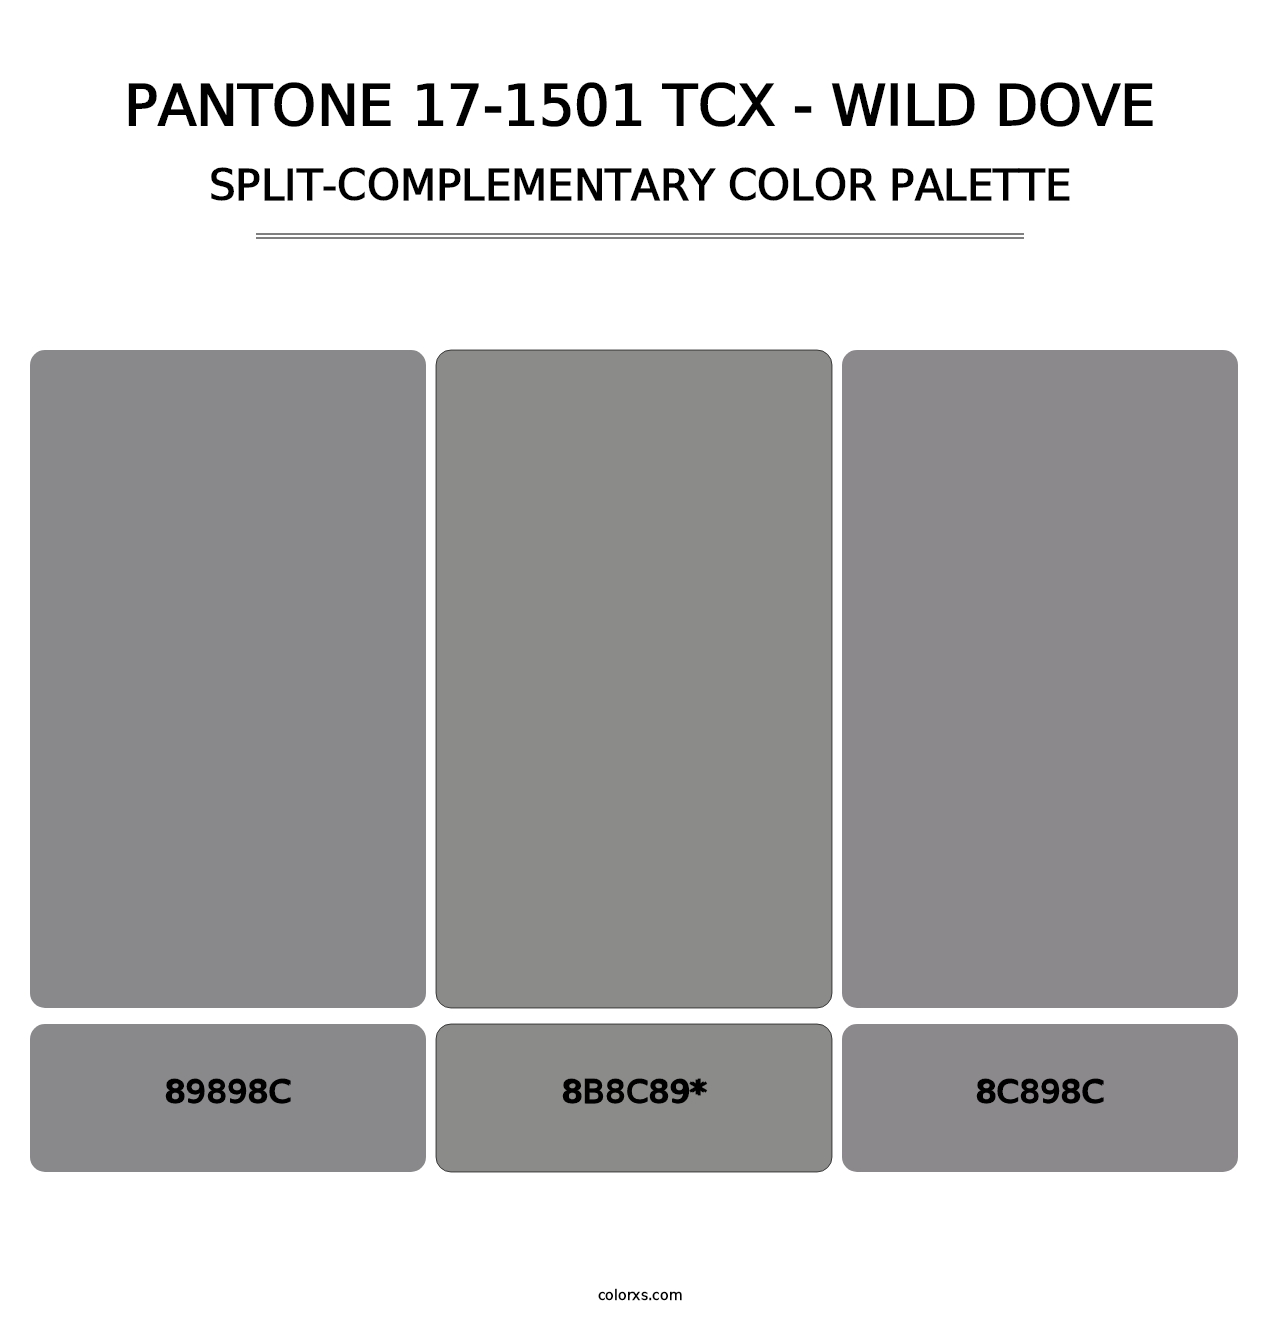 PANTONE 17-1501 TCX - Wild Dove - Split-Complementary Color Palette